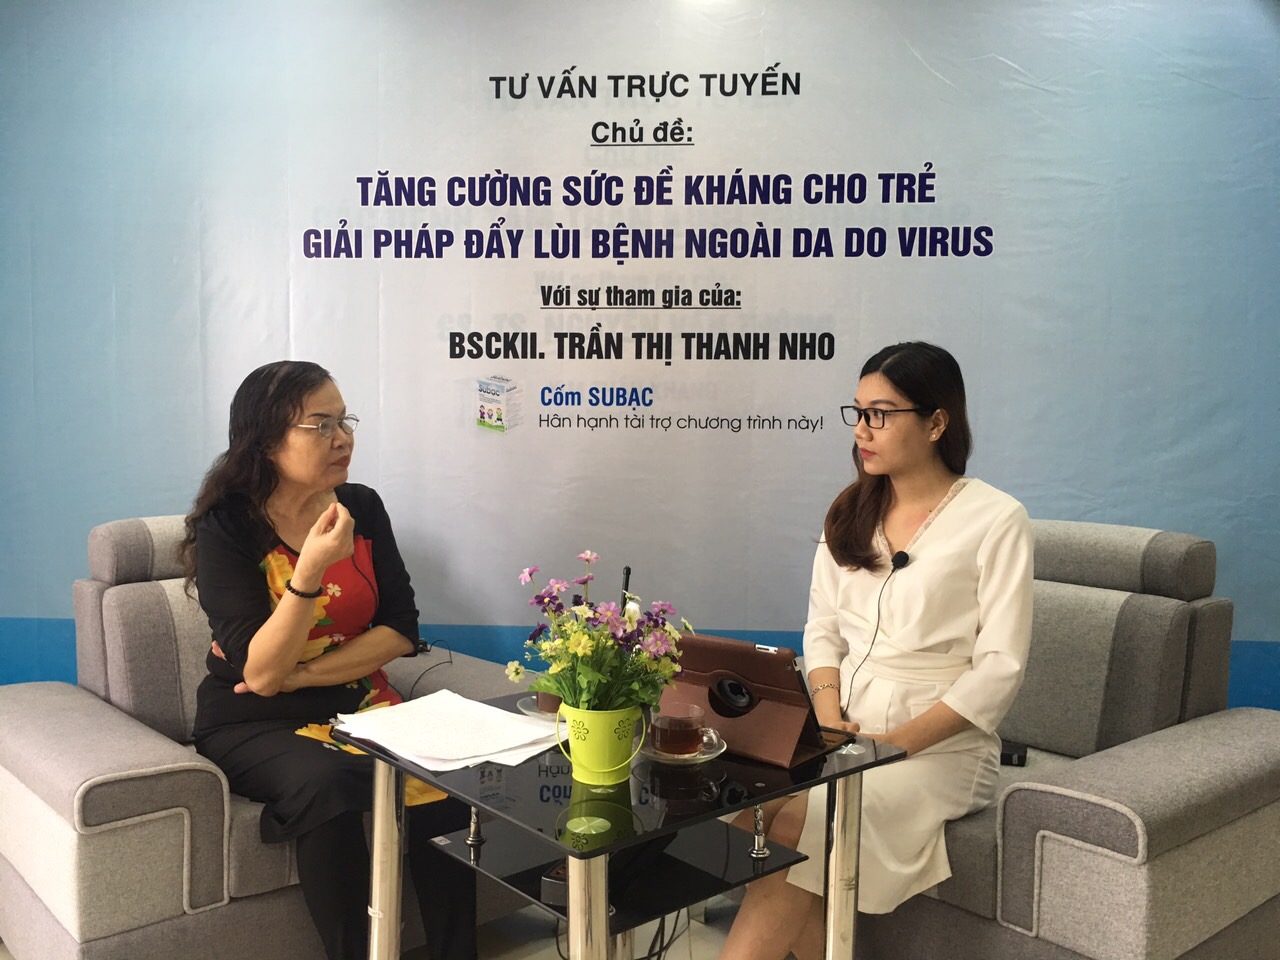 Giao lưu trực tuyến cùng chuyên gia Trần Thị Thanh Nho